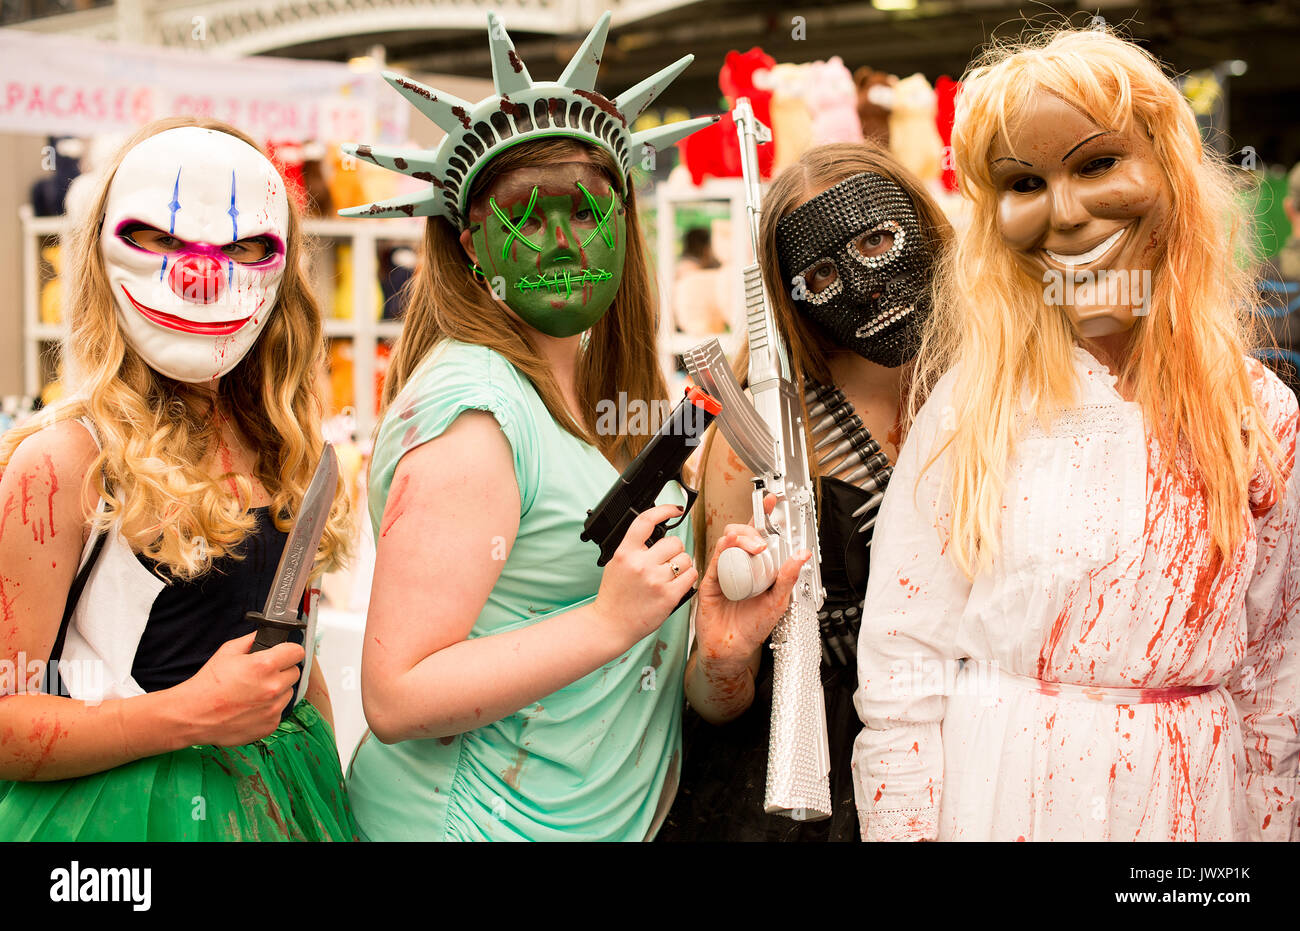 Les jeunes filles habillés comme des personnages de film d'horreur la purge  à la London Film & Comic Con 2017 (Appuyez sur col/a obtenu la permission  de la part des organisateurs Photo